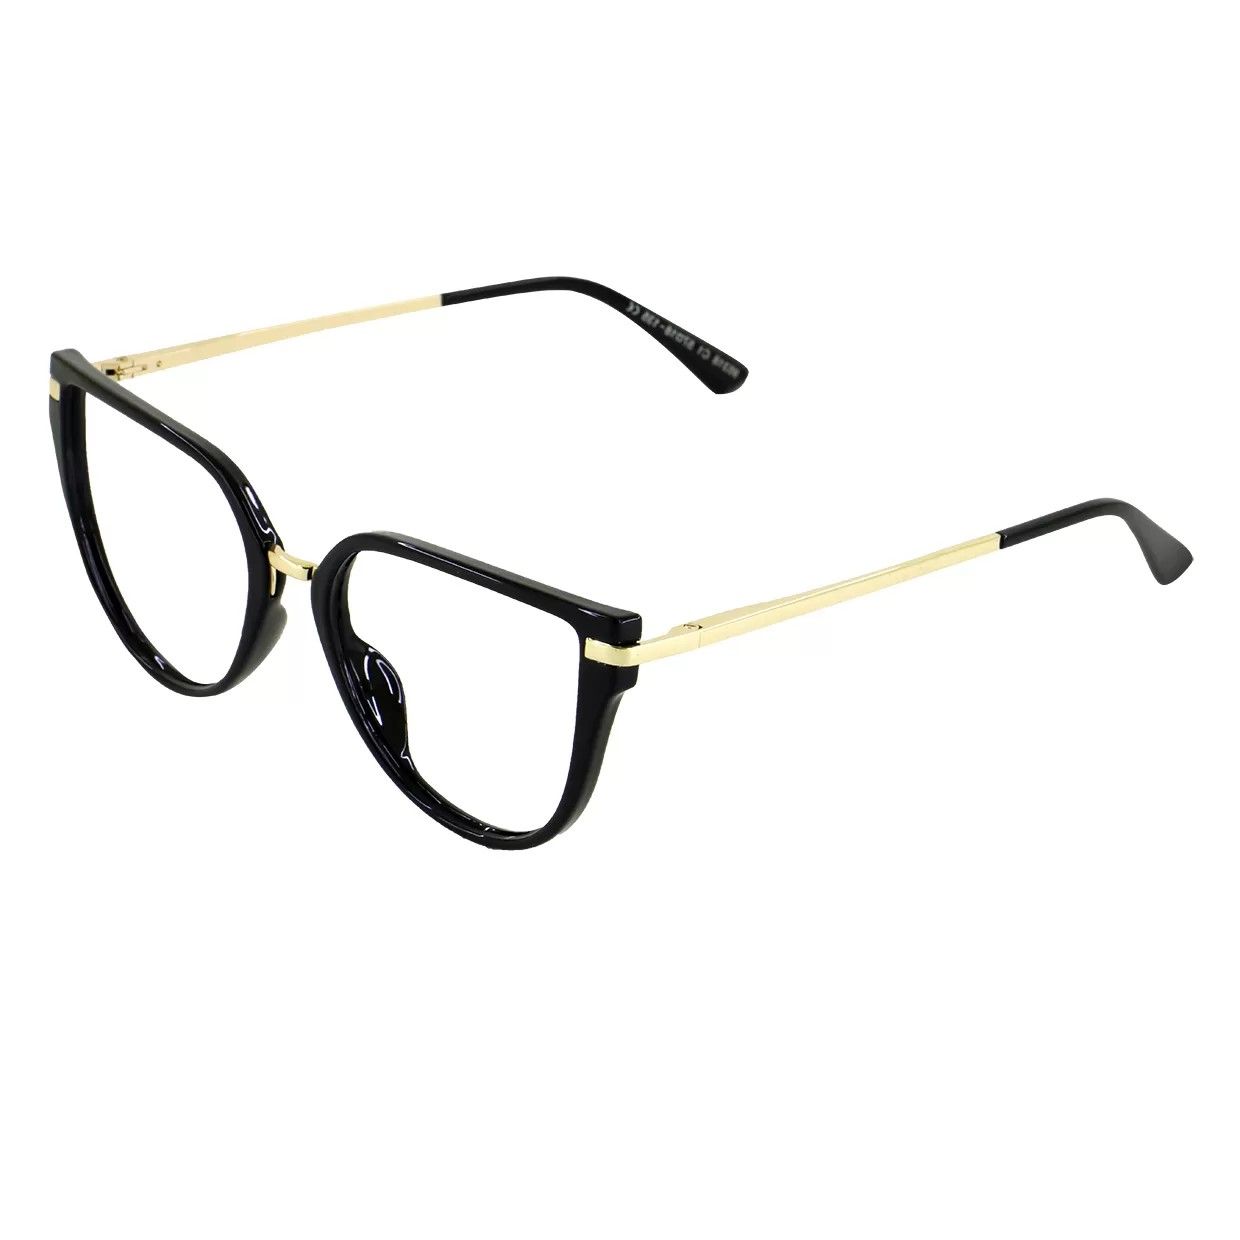 فریم عینک طبی گودلوک مدل 95318 -  - 2